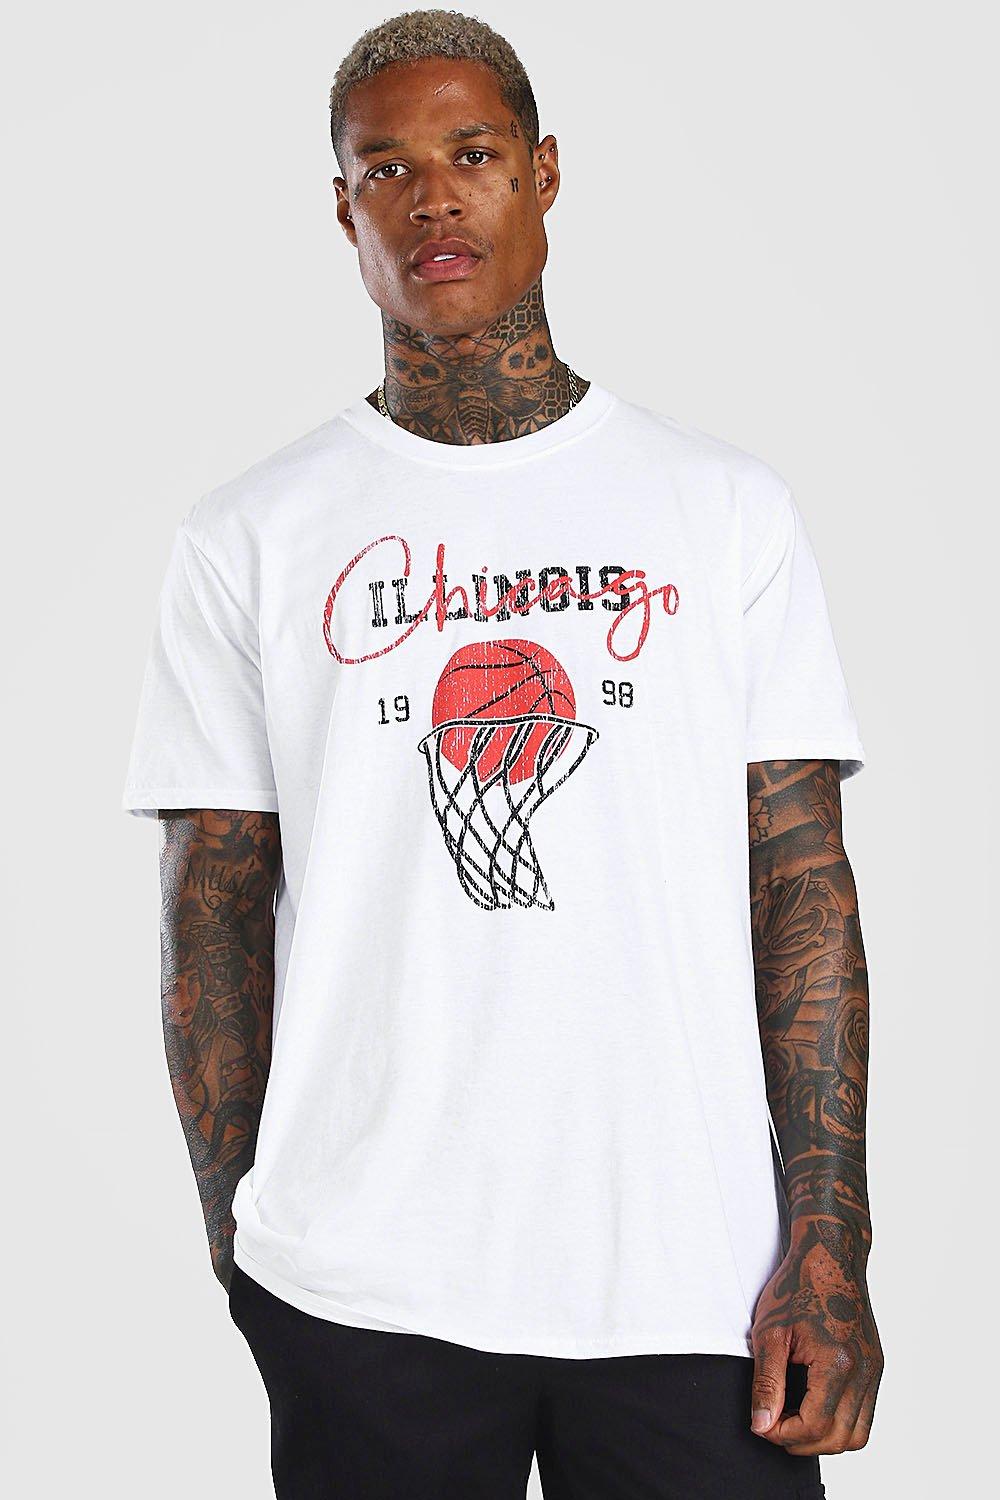 chicago basketball shirt